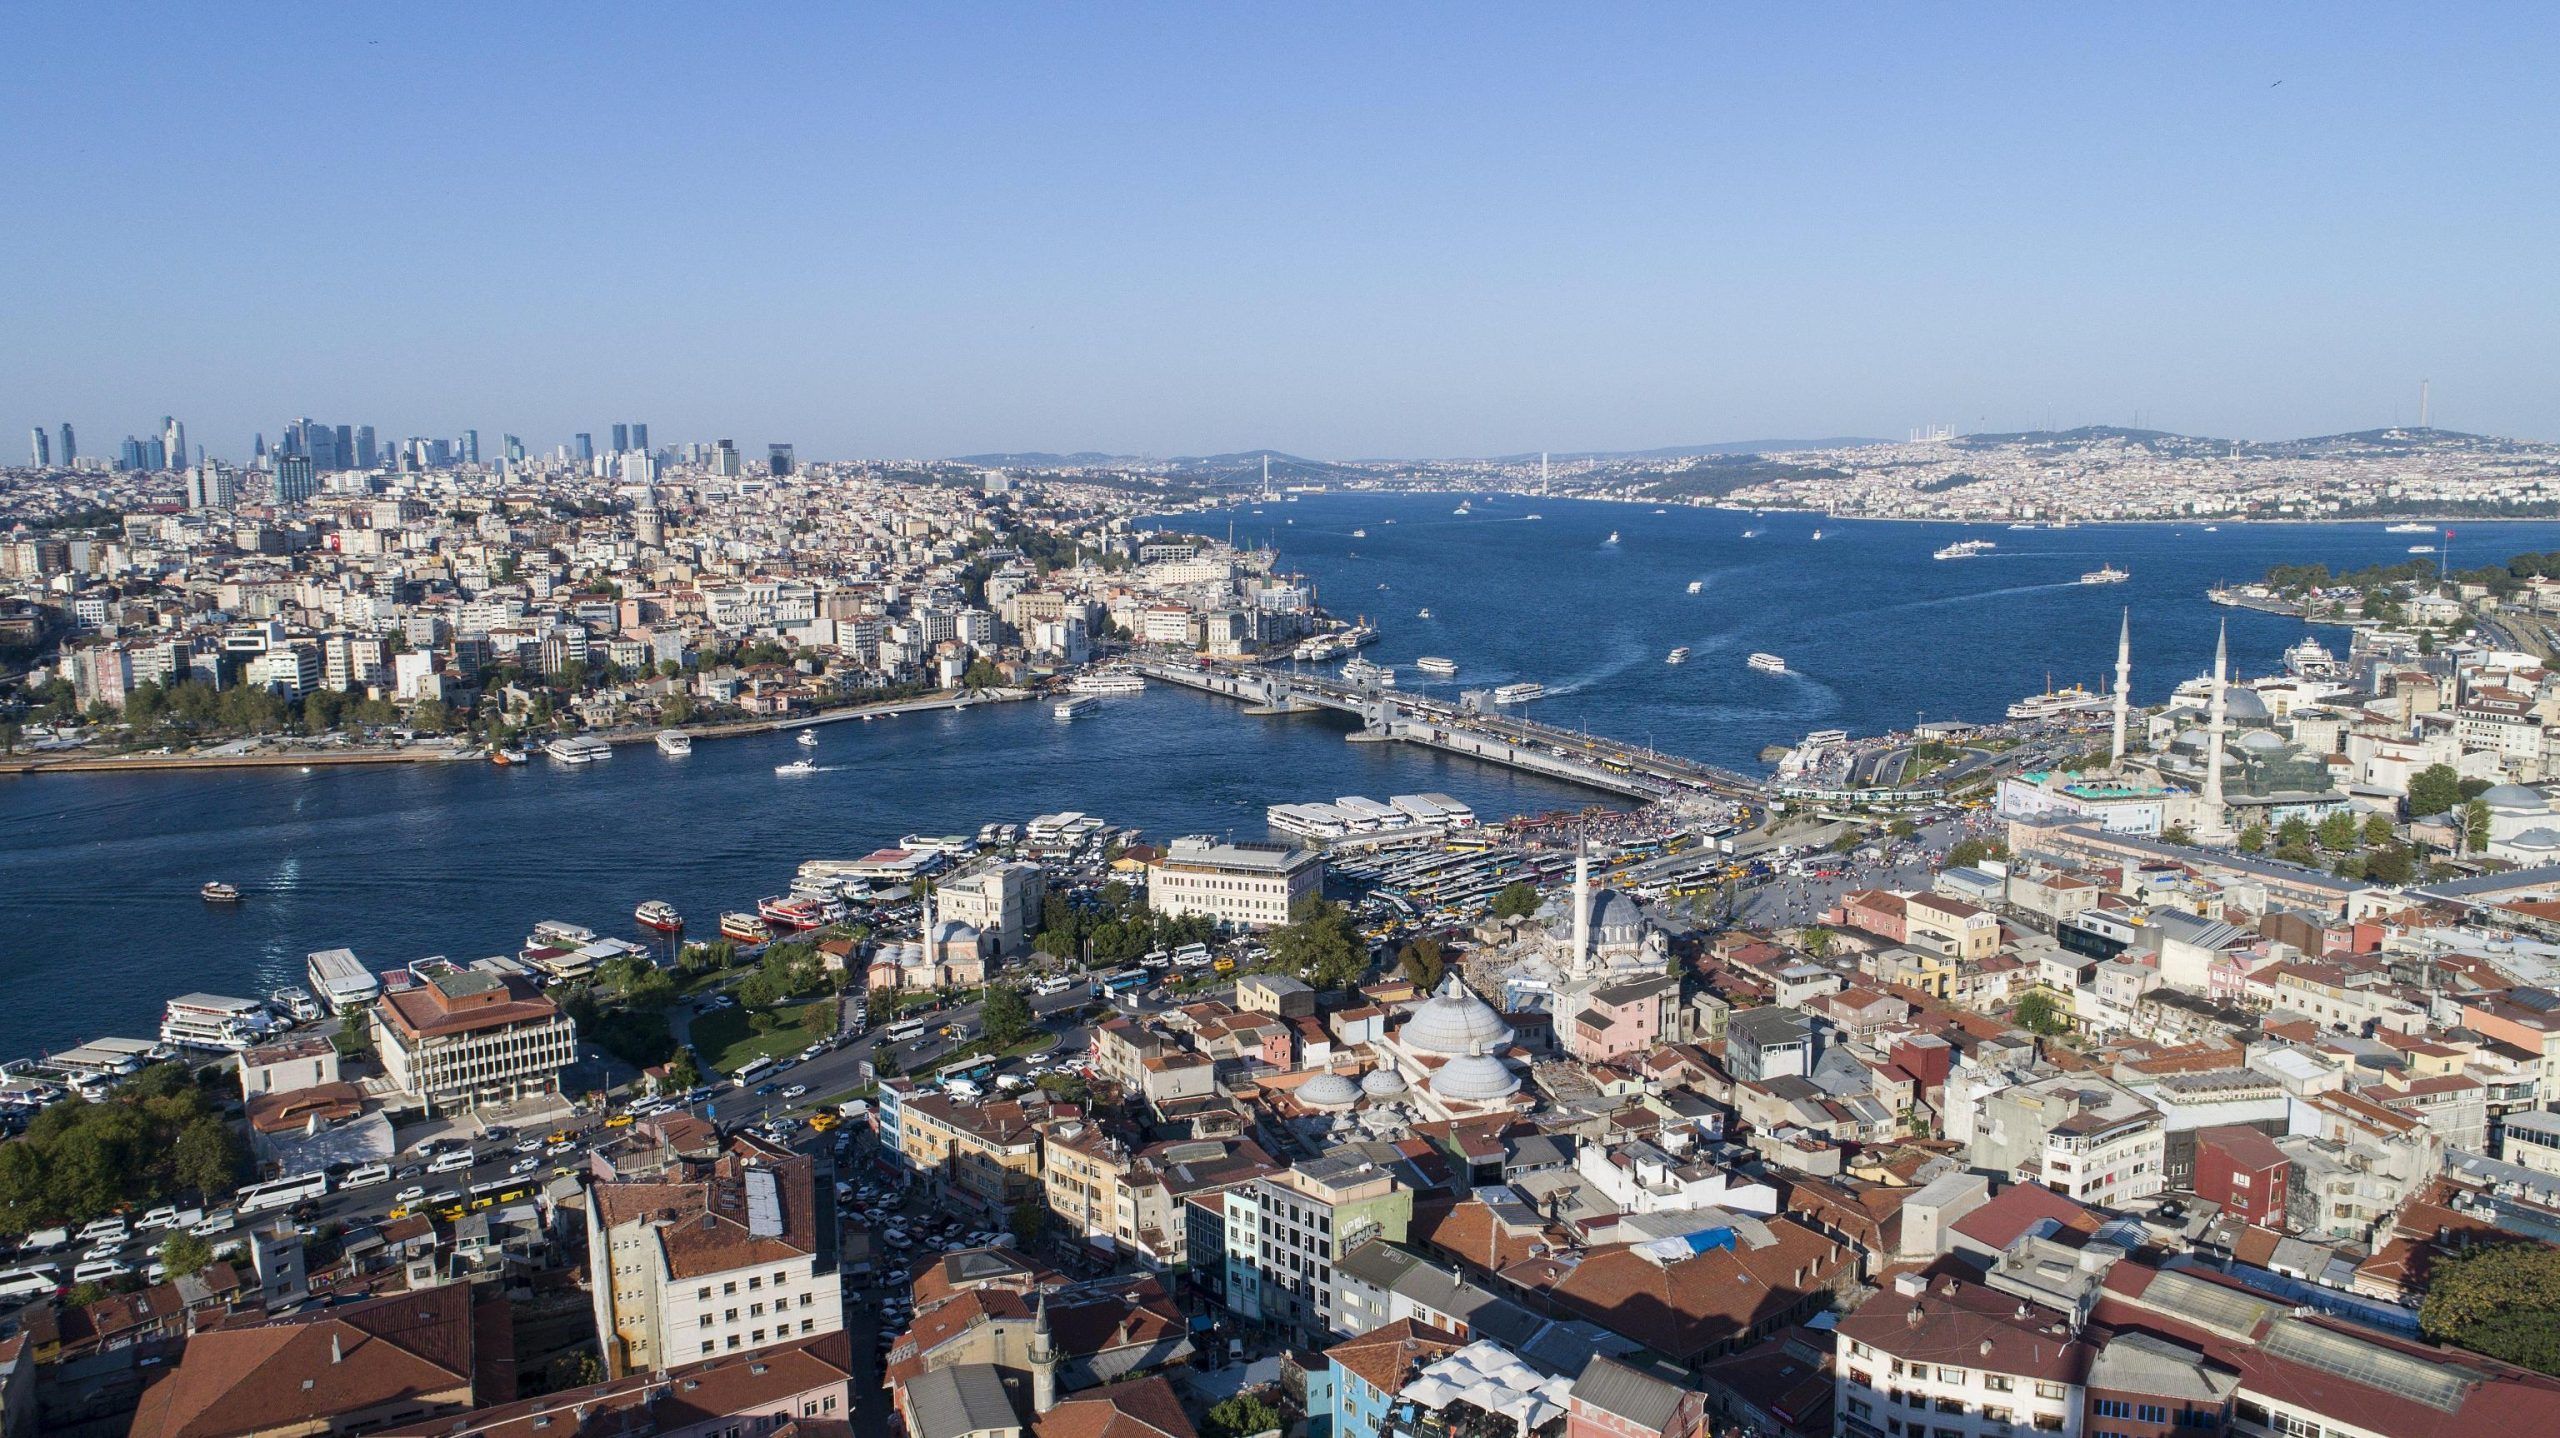 Viaggiare in Turchia è sicuro? Le zone più a rischio attentati e sequestri